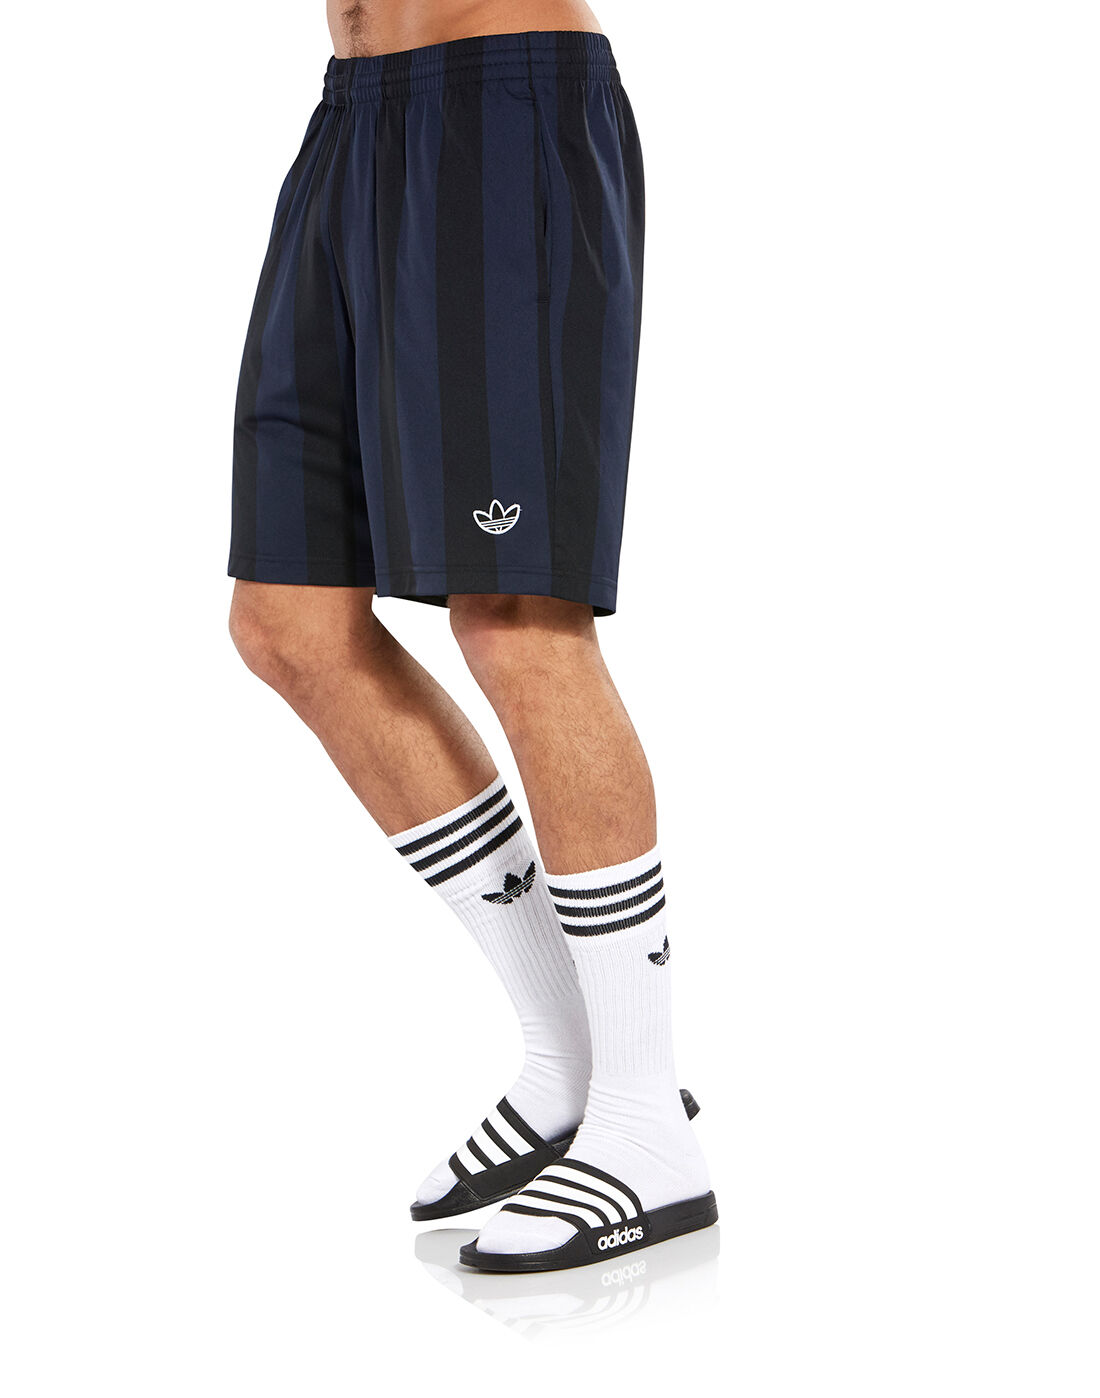 navy adidas shorts mens